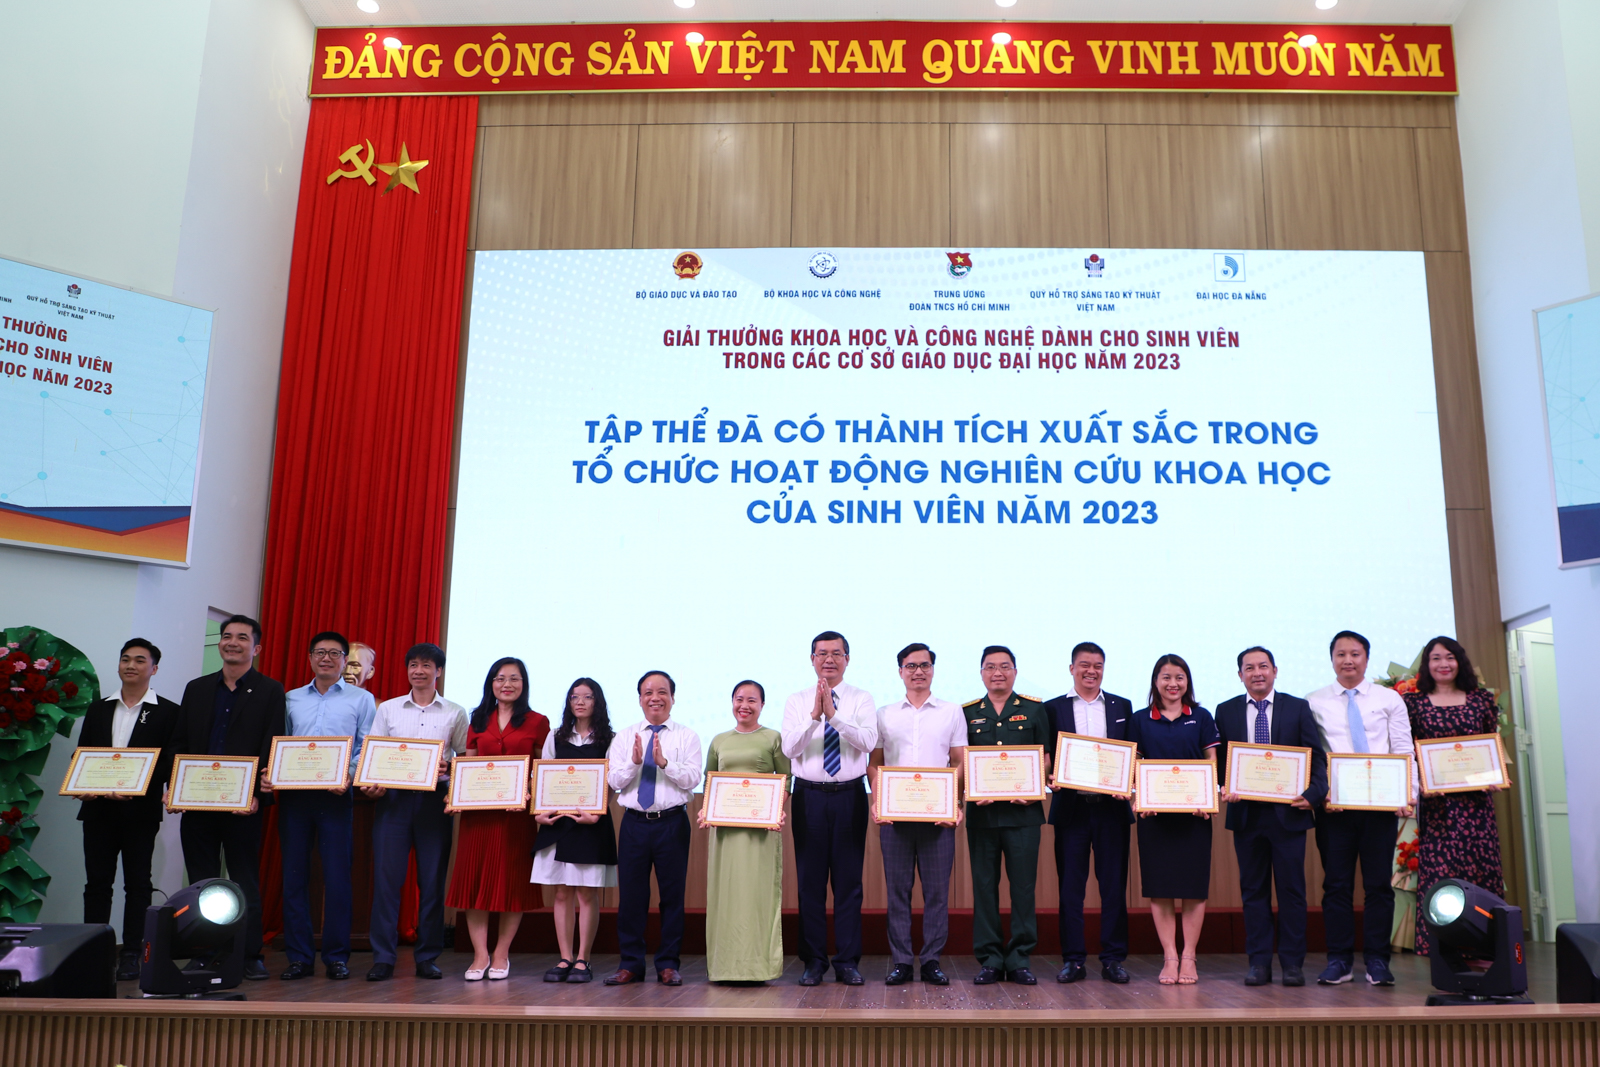 Trường Đại học Công Thương Thành phố Hồ Chí Minh xuất sắc đạt 01 giải Nhất, 01 giải Nhì, 02 giải Ba, 05 giải Khuyến khích tại Giải thưởng khoa học và công nghệ dành cho sinh viên trong các cơ sở giáo 